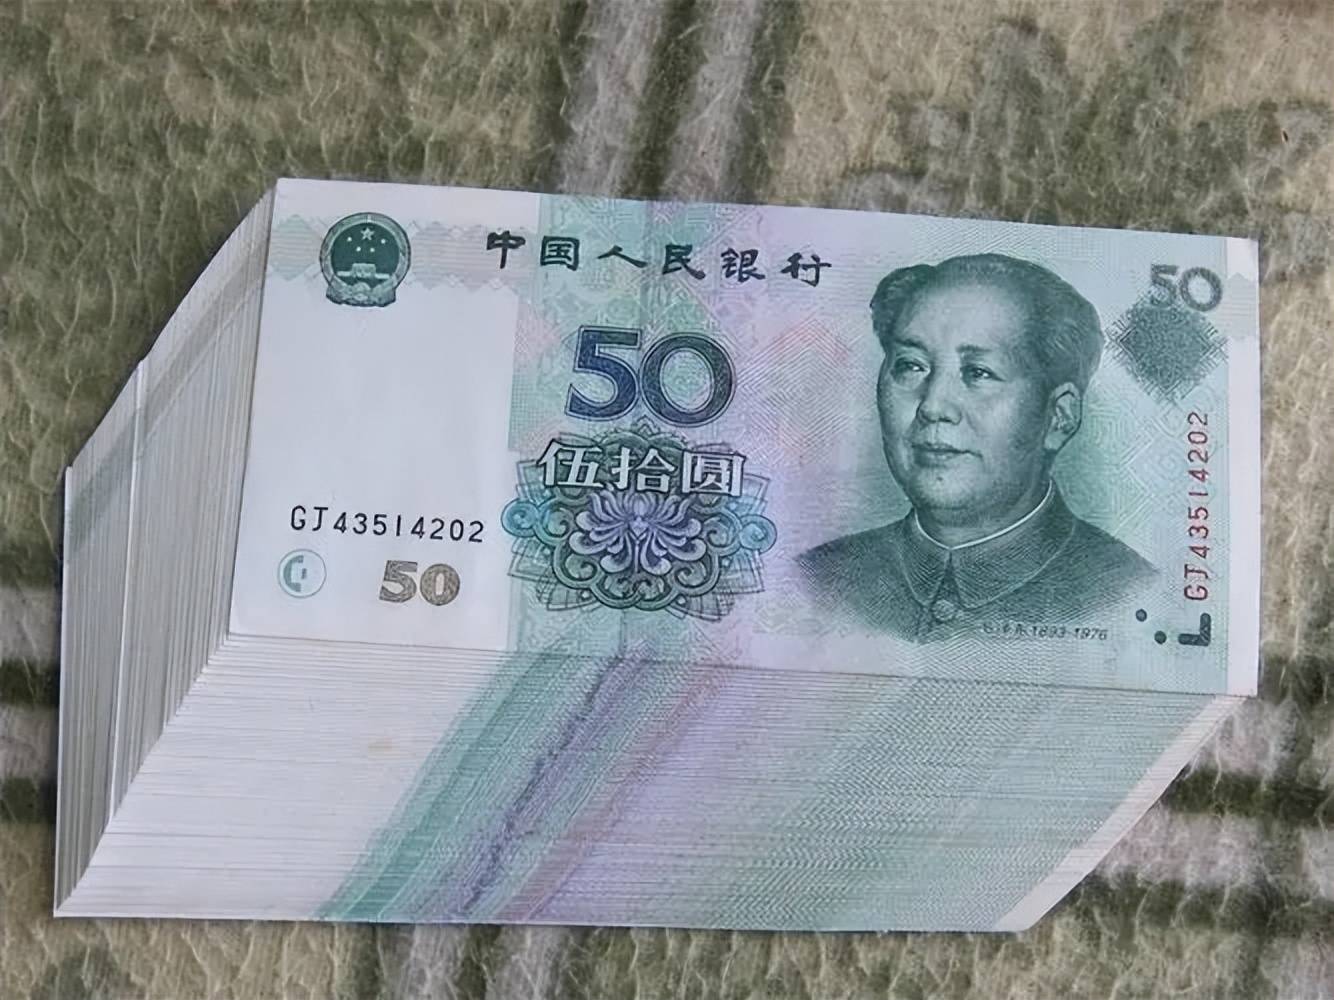 如上图所示的一张2005年版的50元纸币,其收藏报价高达18000元人民币